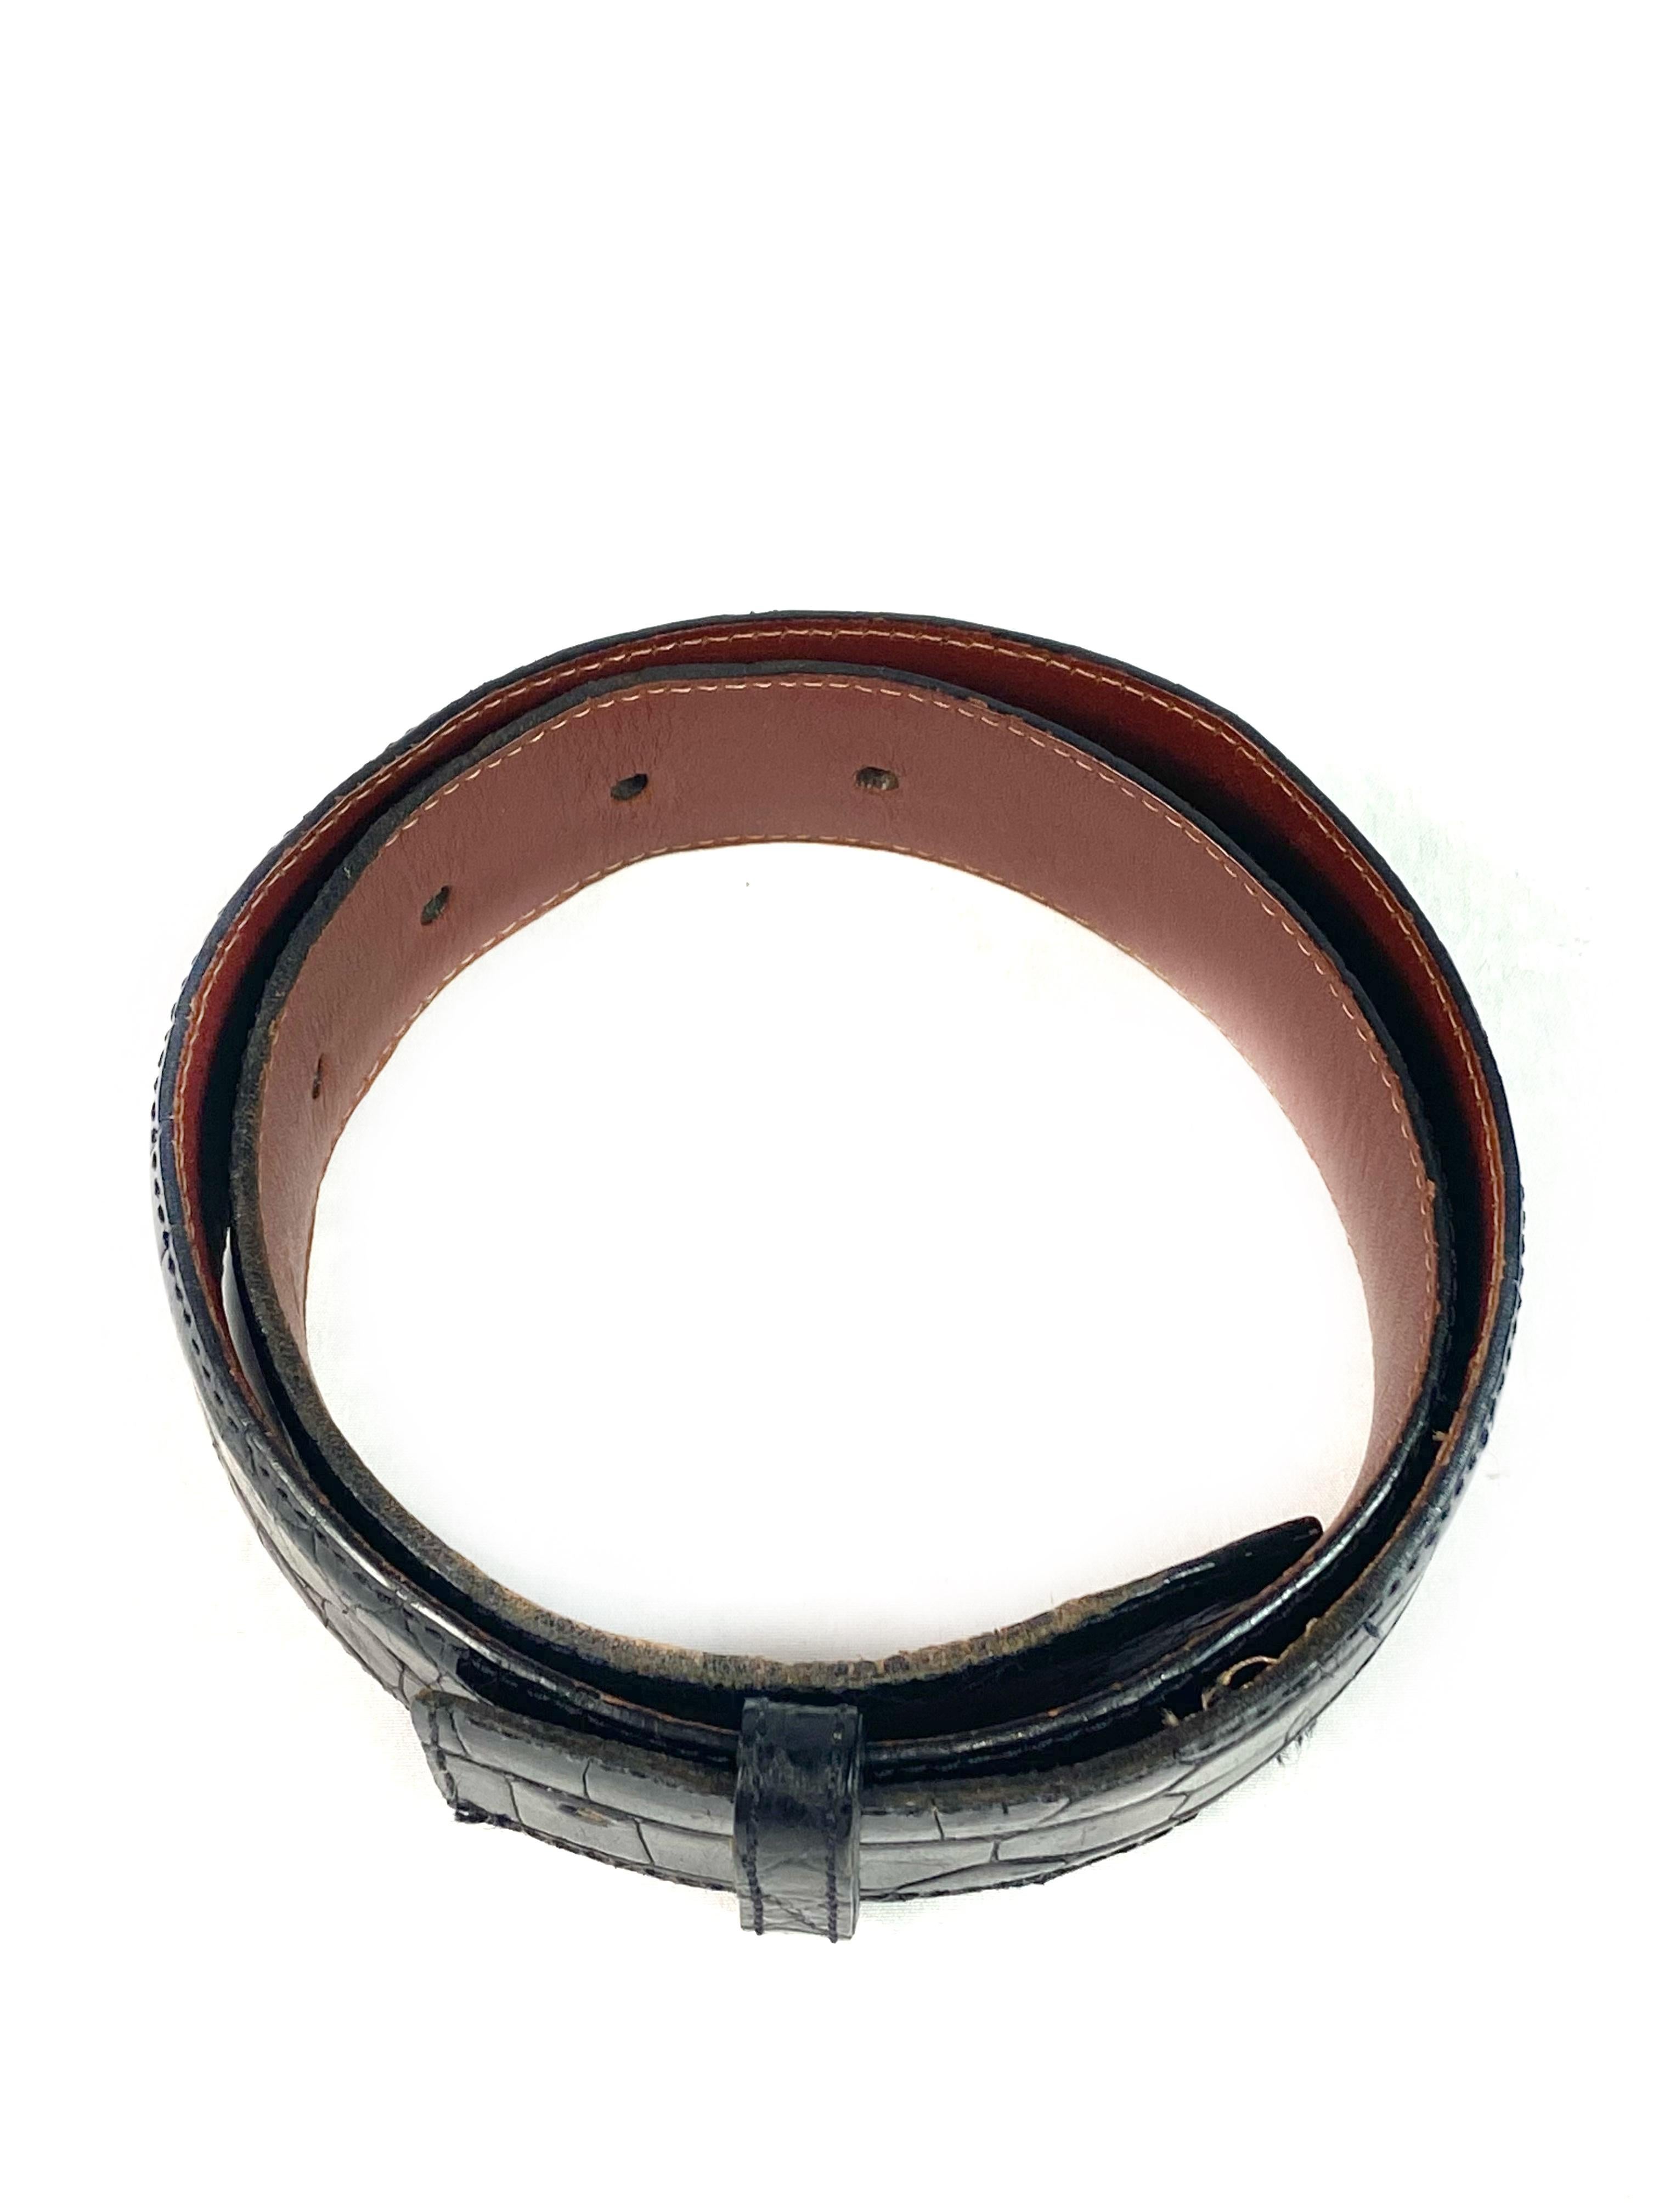 Détails du produit :

Le pari se caractérise par une finition noire et brillante à l'extérieur et un cuir brun à l'intérieur. La ceinture n'est pas livrée avec la boucle.